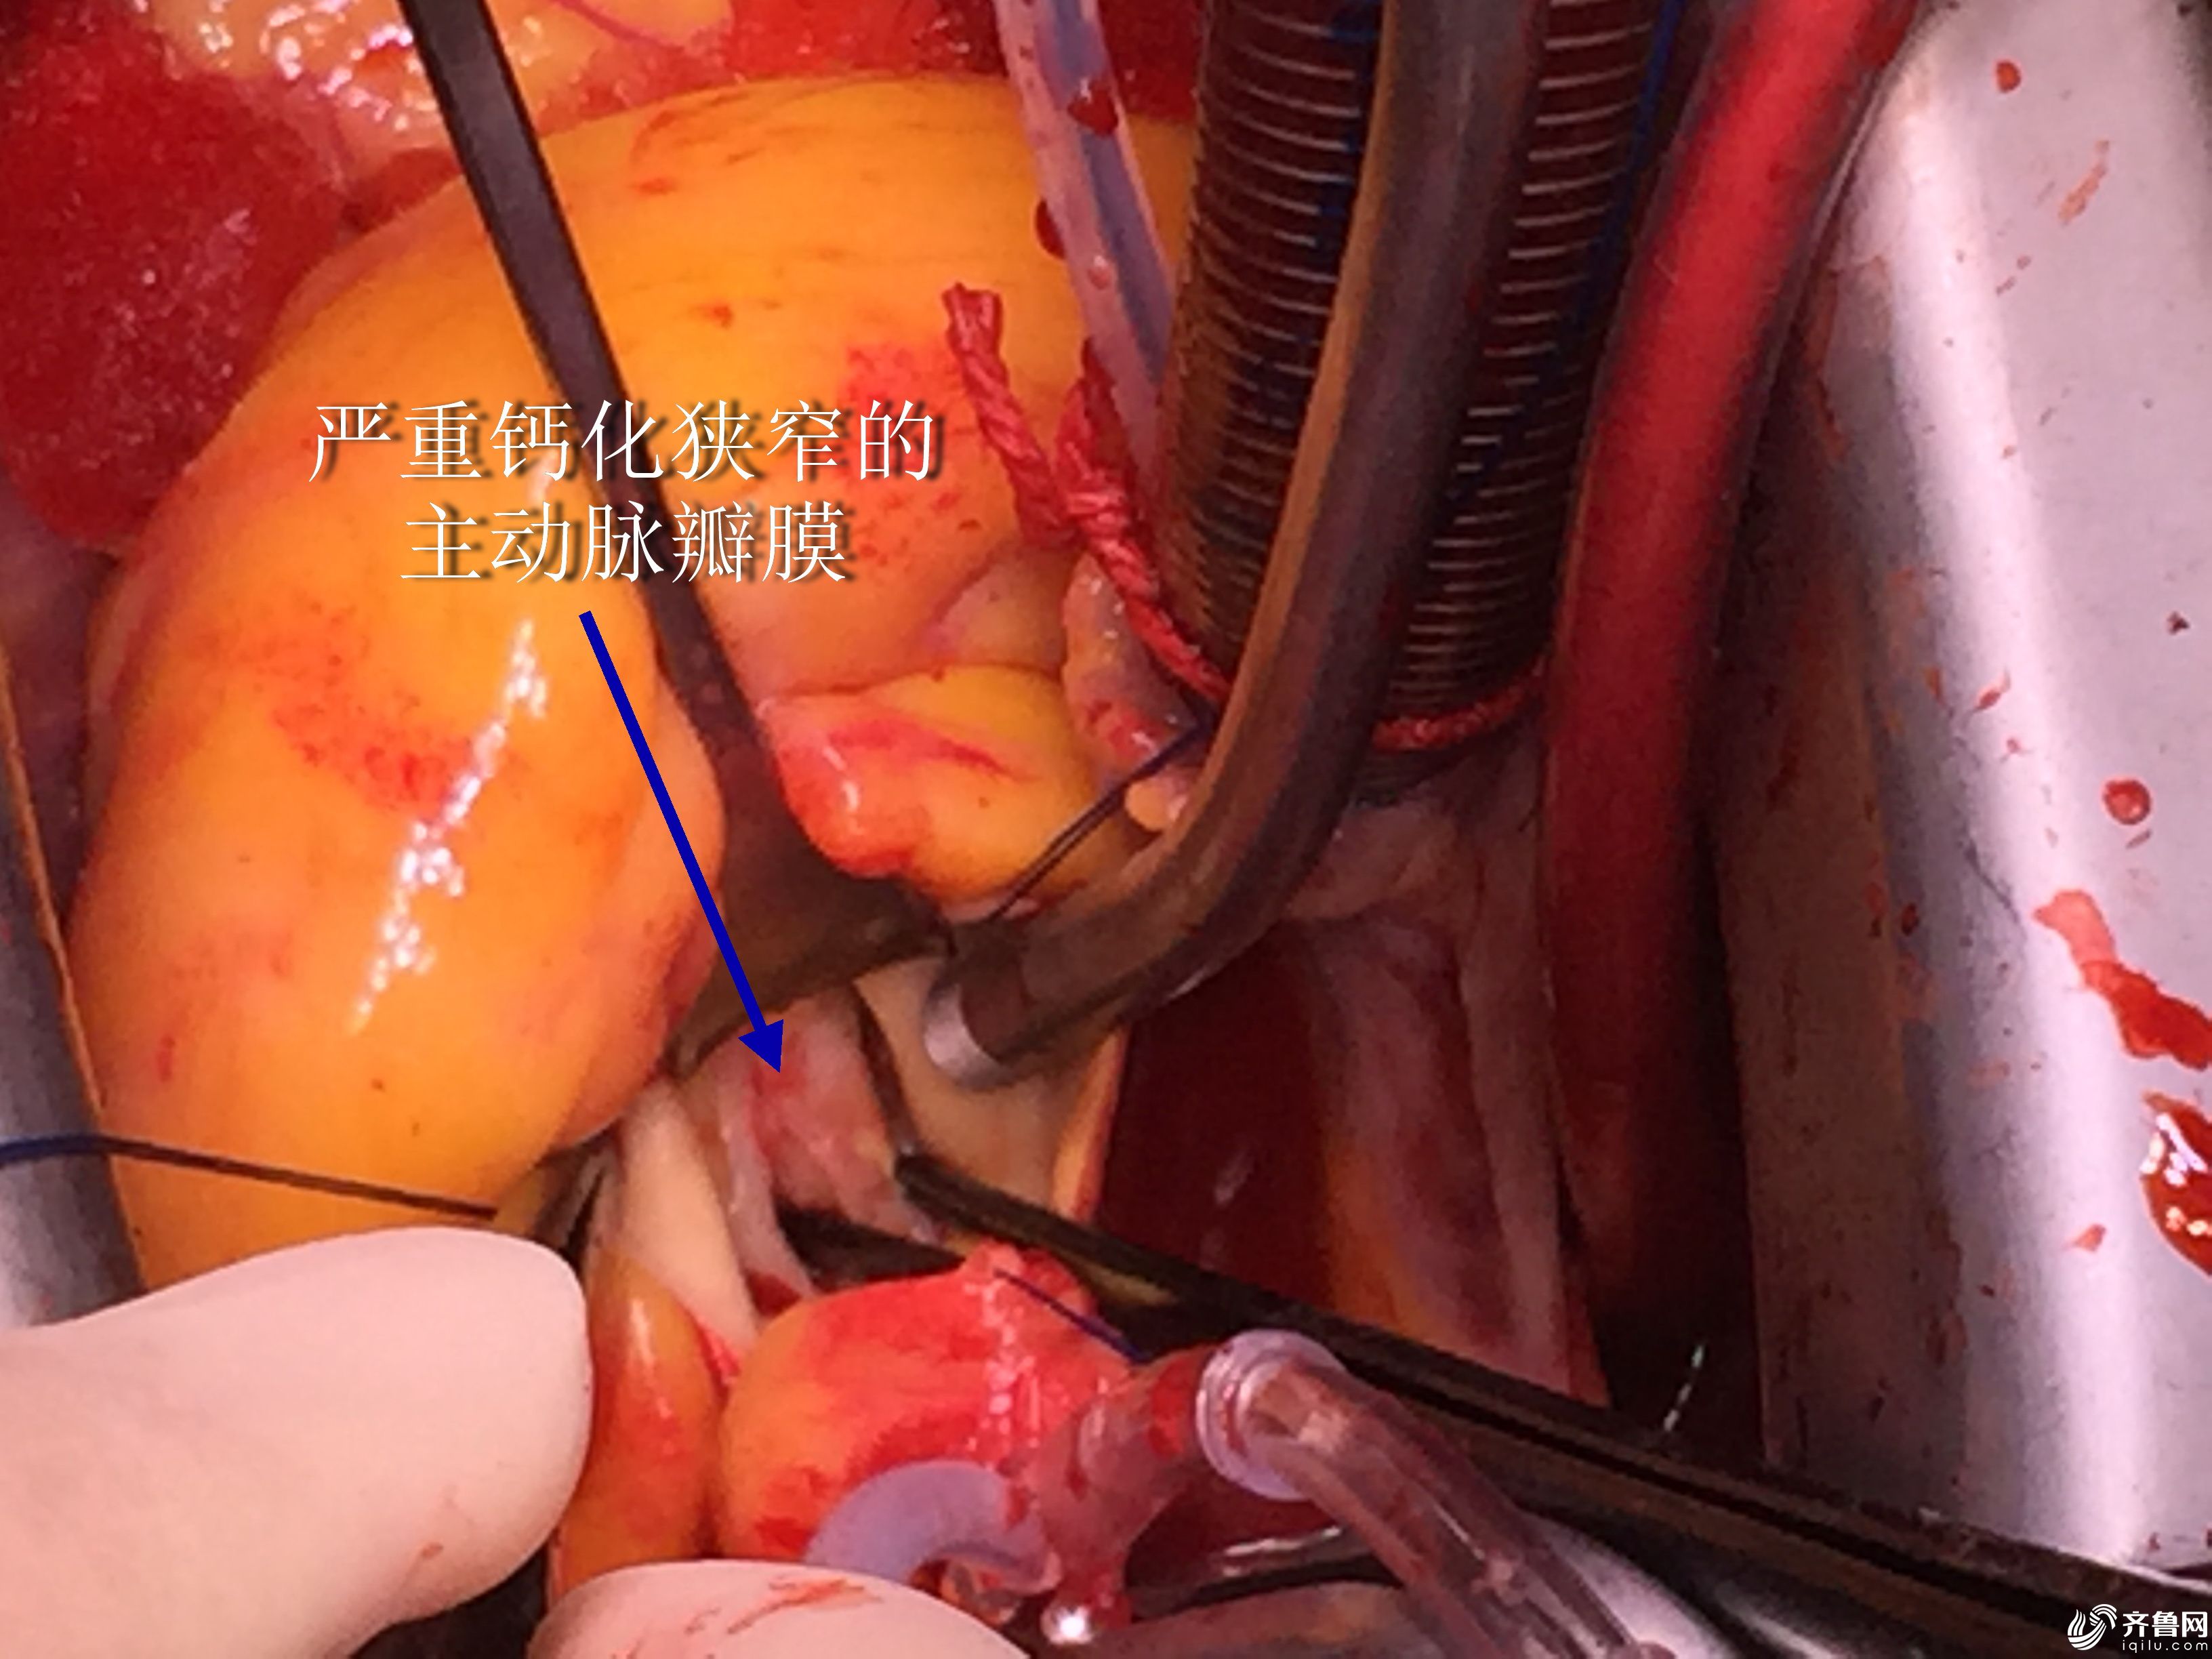 主动脉瓣膜已经发生器质性病变,不可逆转,建议尽早行心脏瓣膜置换手术